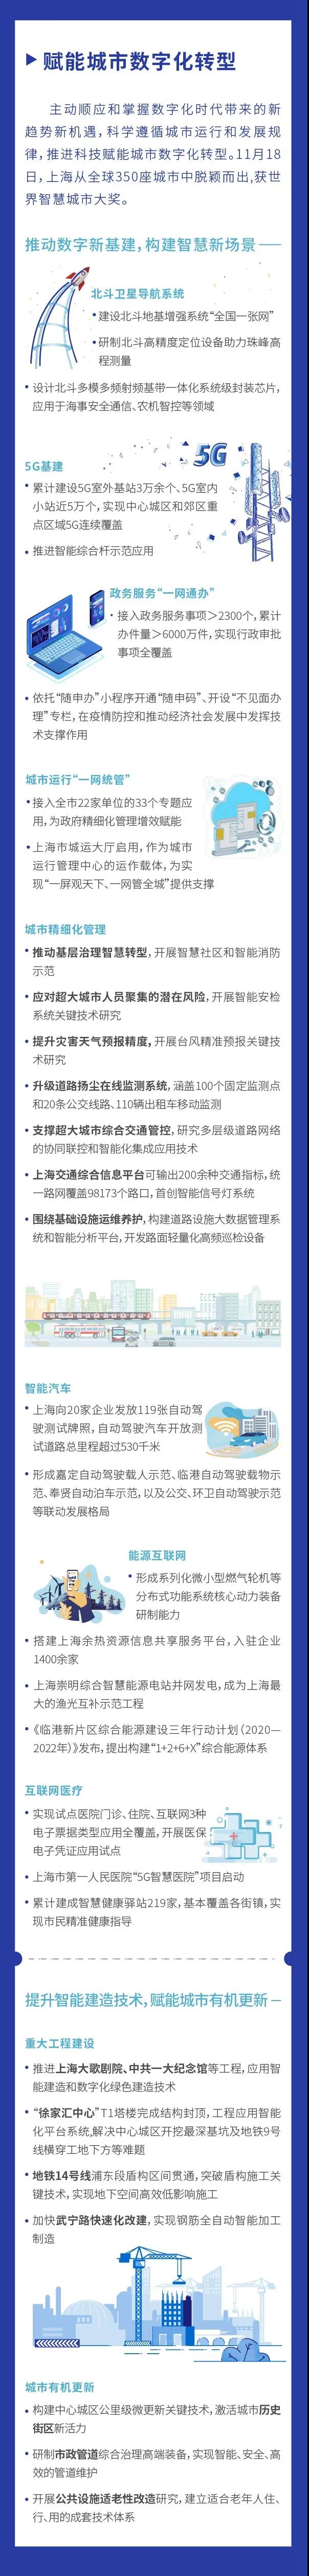 图看《2020上海科技进步报告》③2.jpg